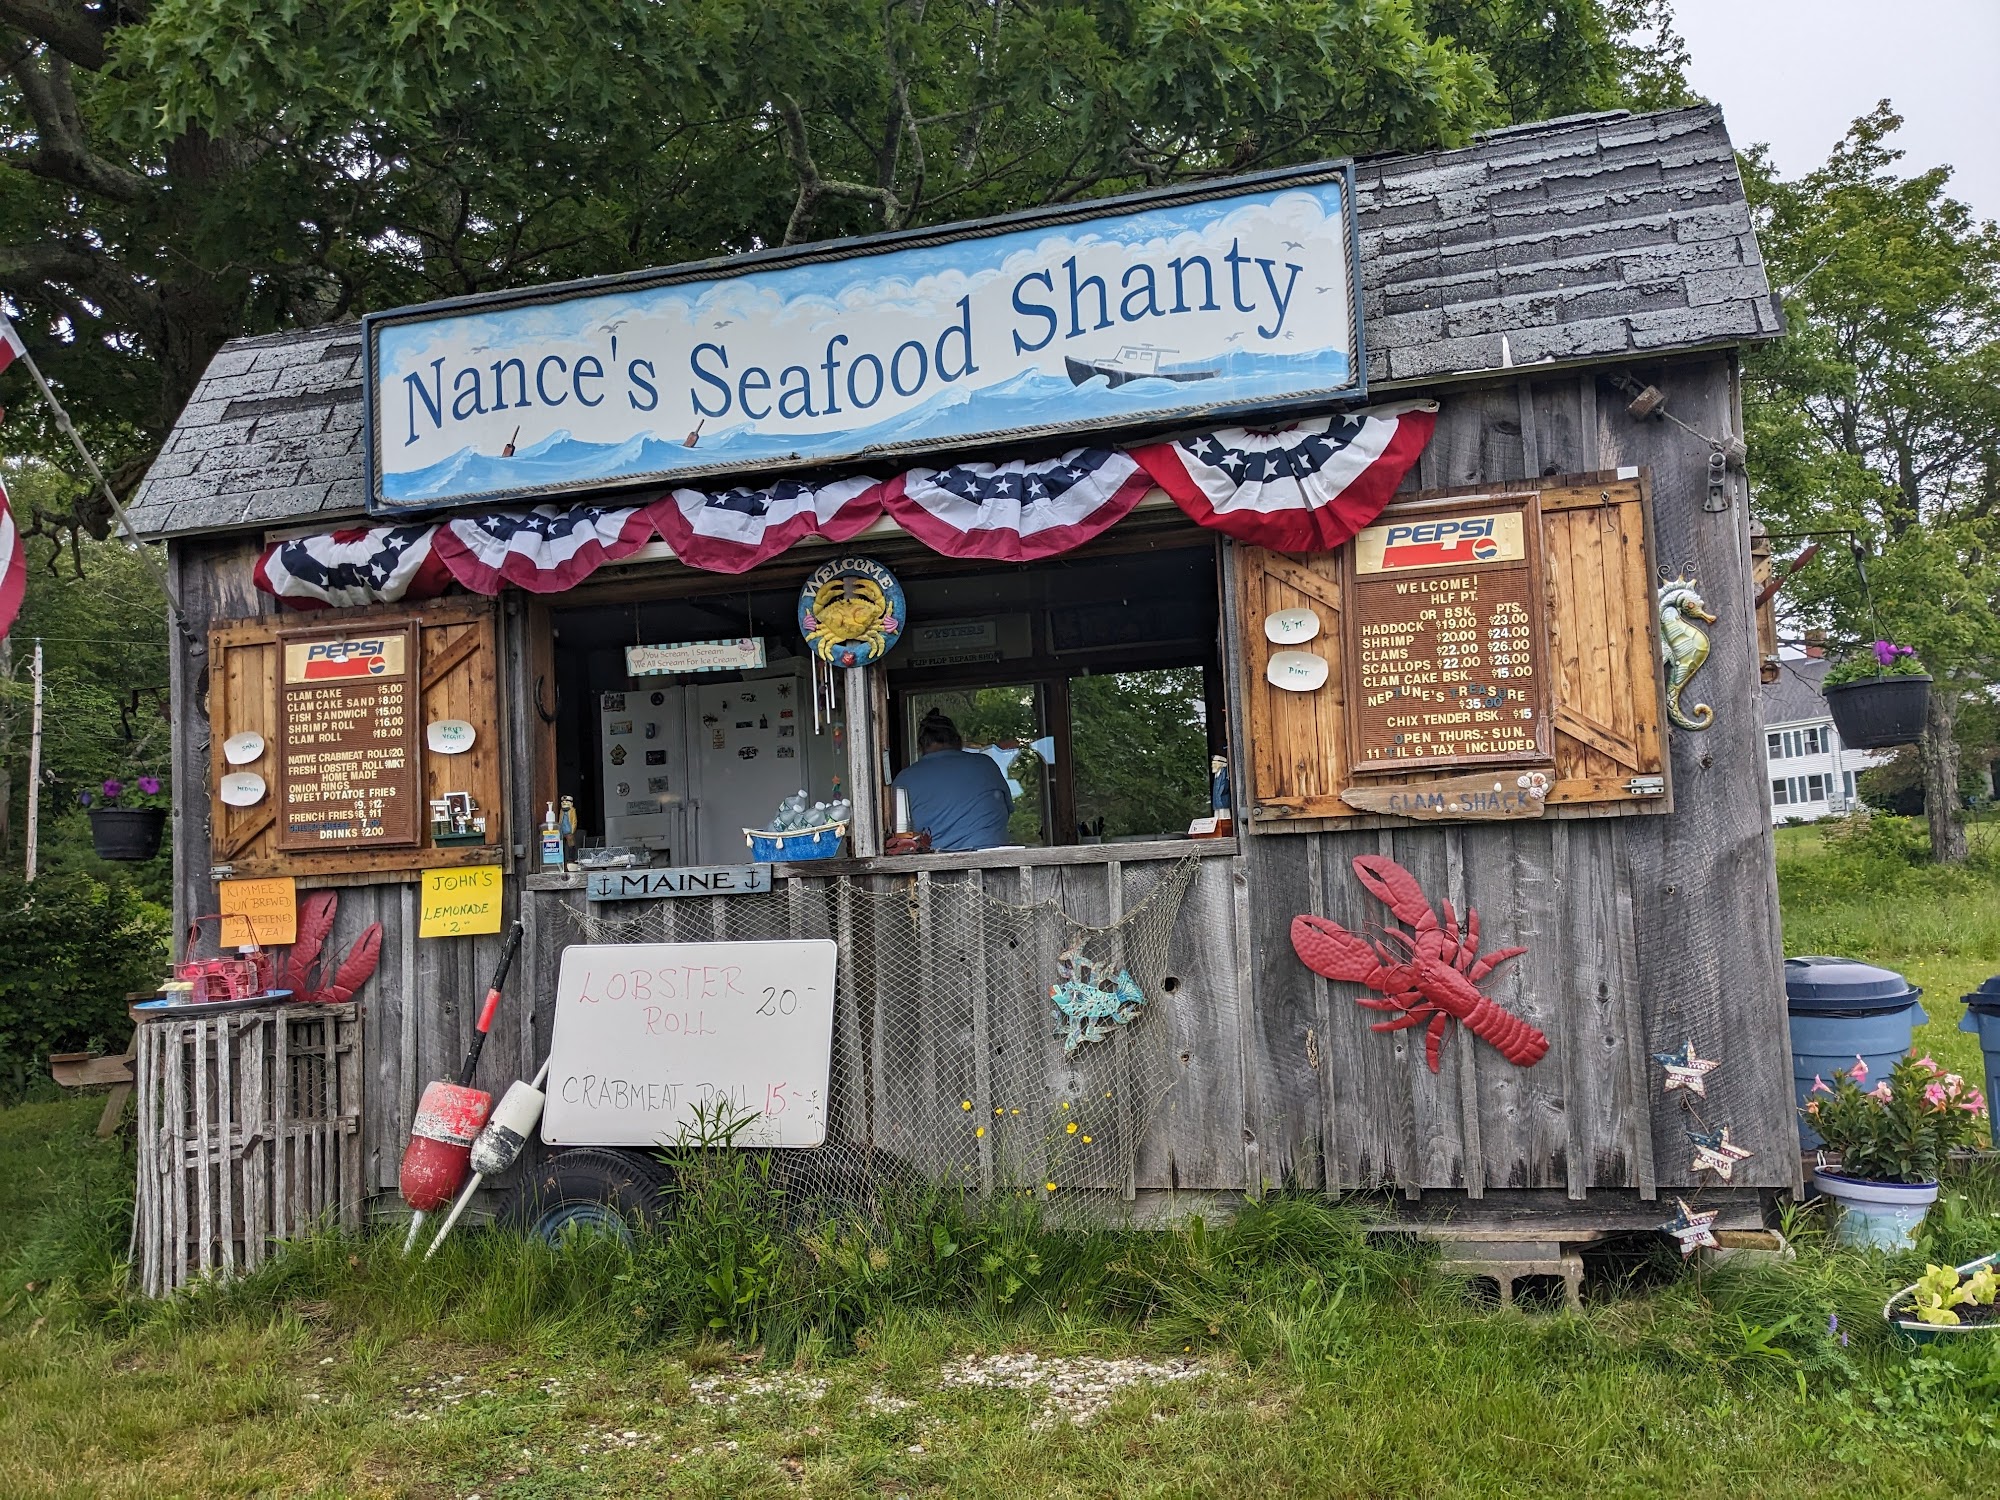 Nance's Seafood Shanty